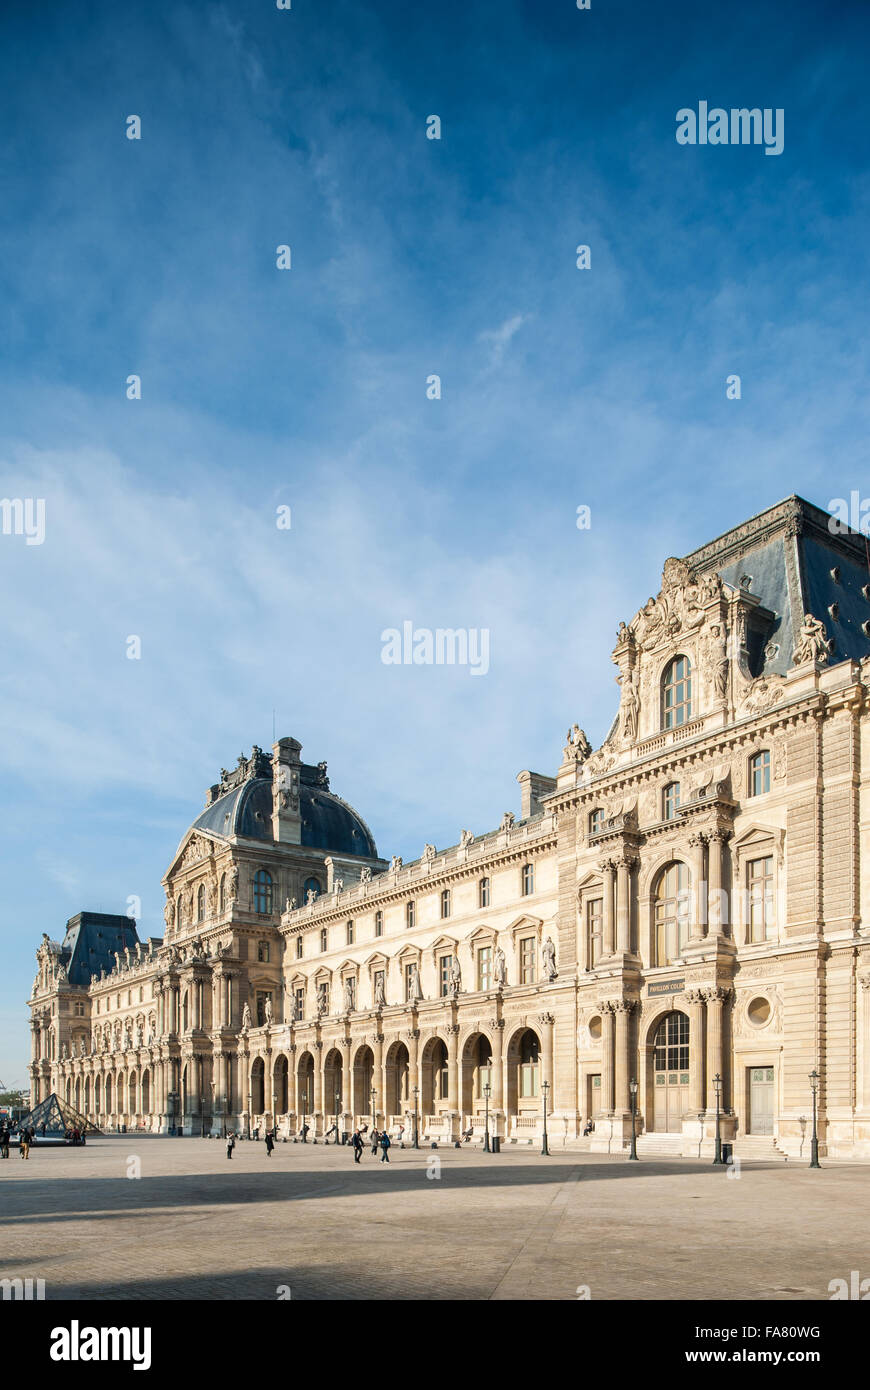 France, Paris, Le Louvre museum Stock Photo